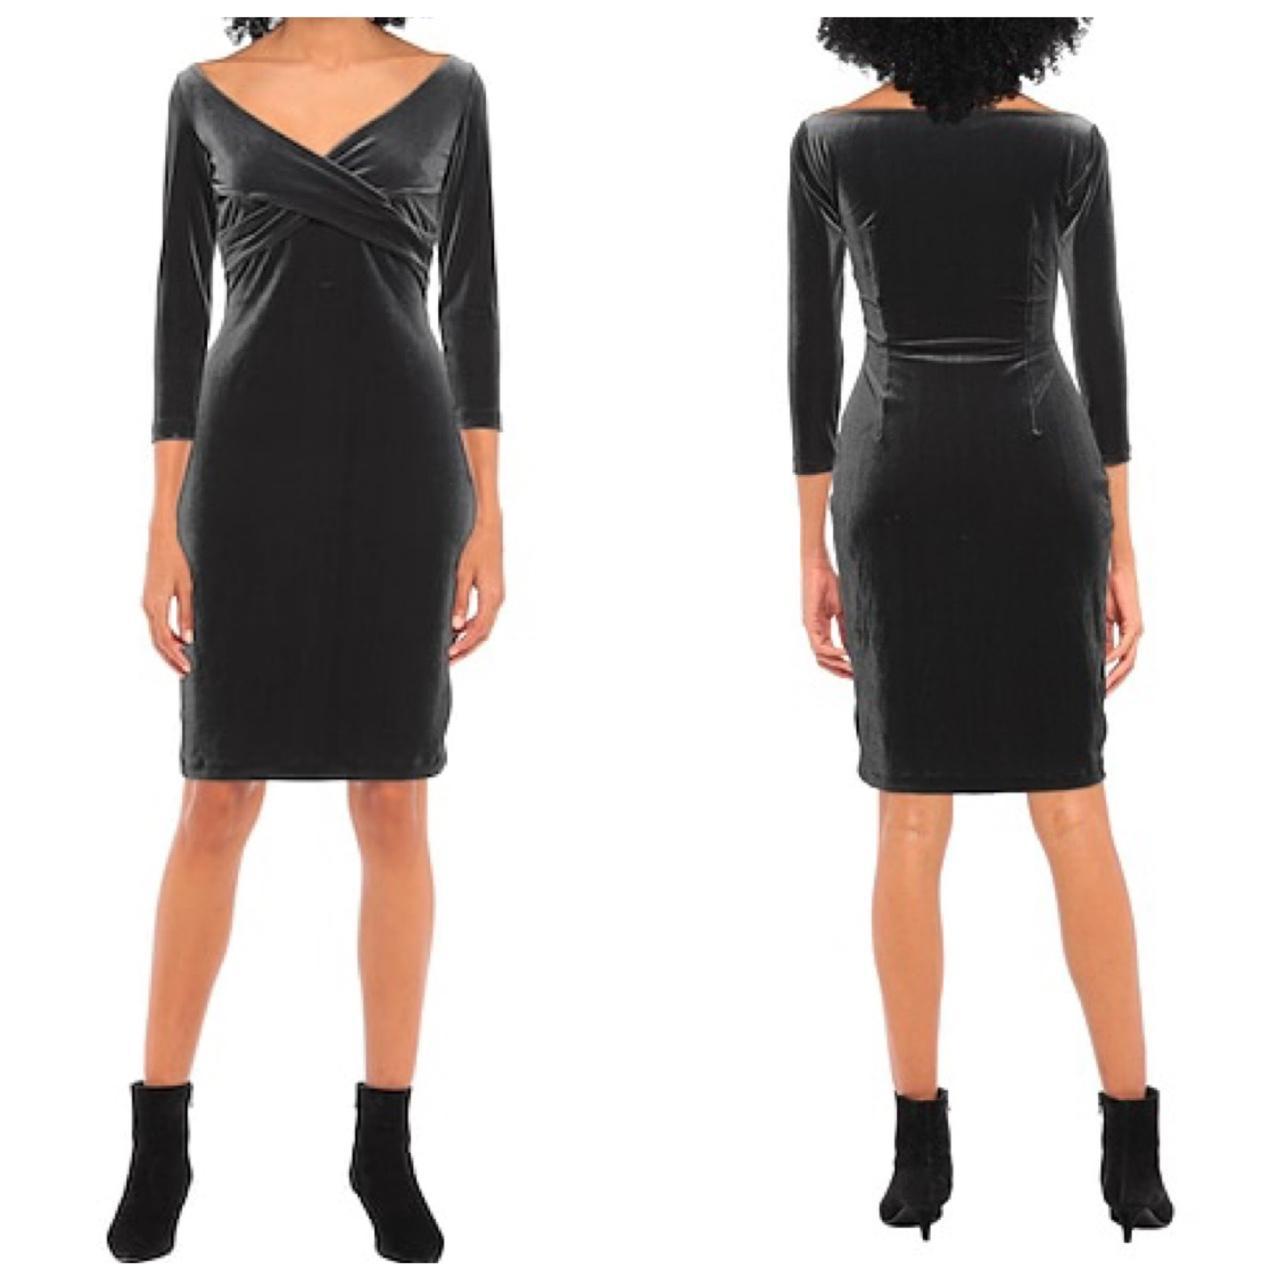 Chiara Boni La Petite Robe Women's Black Dress